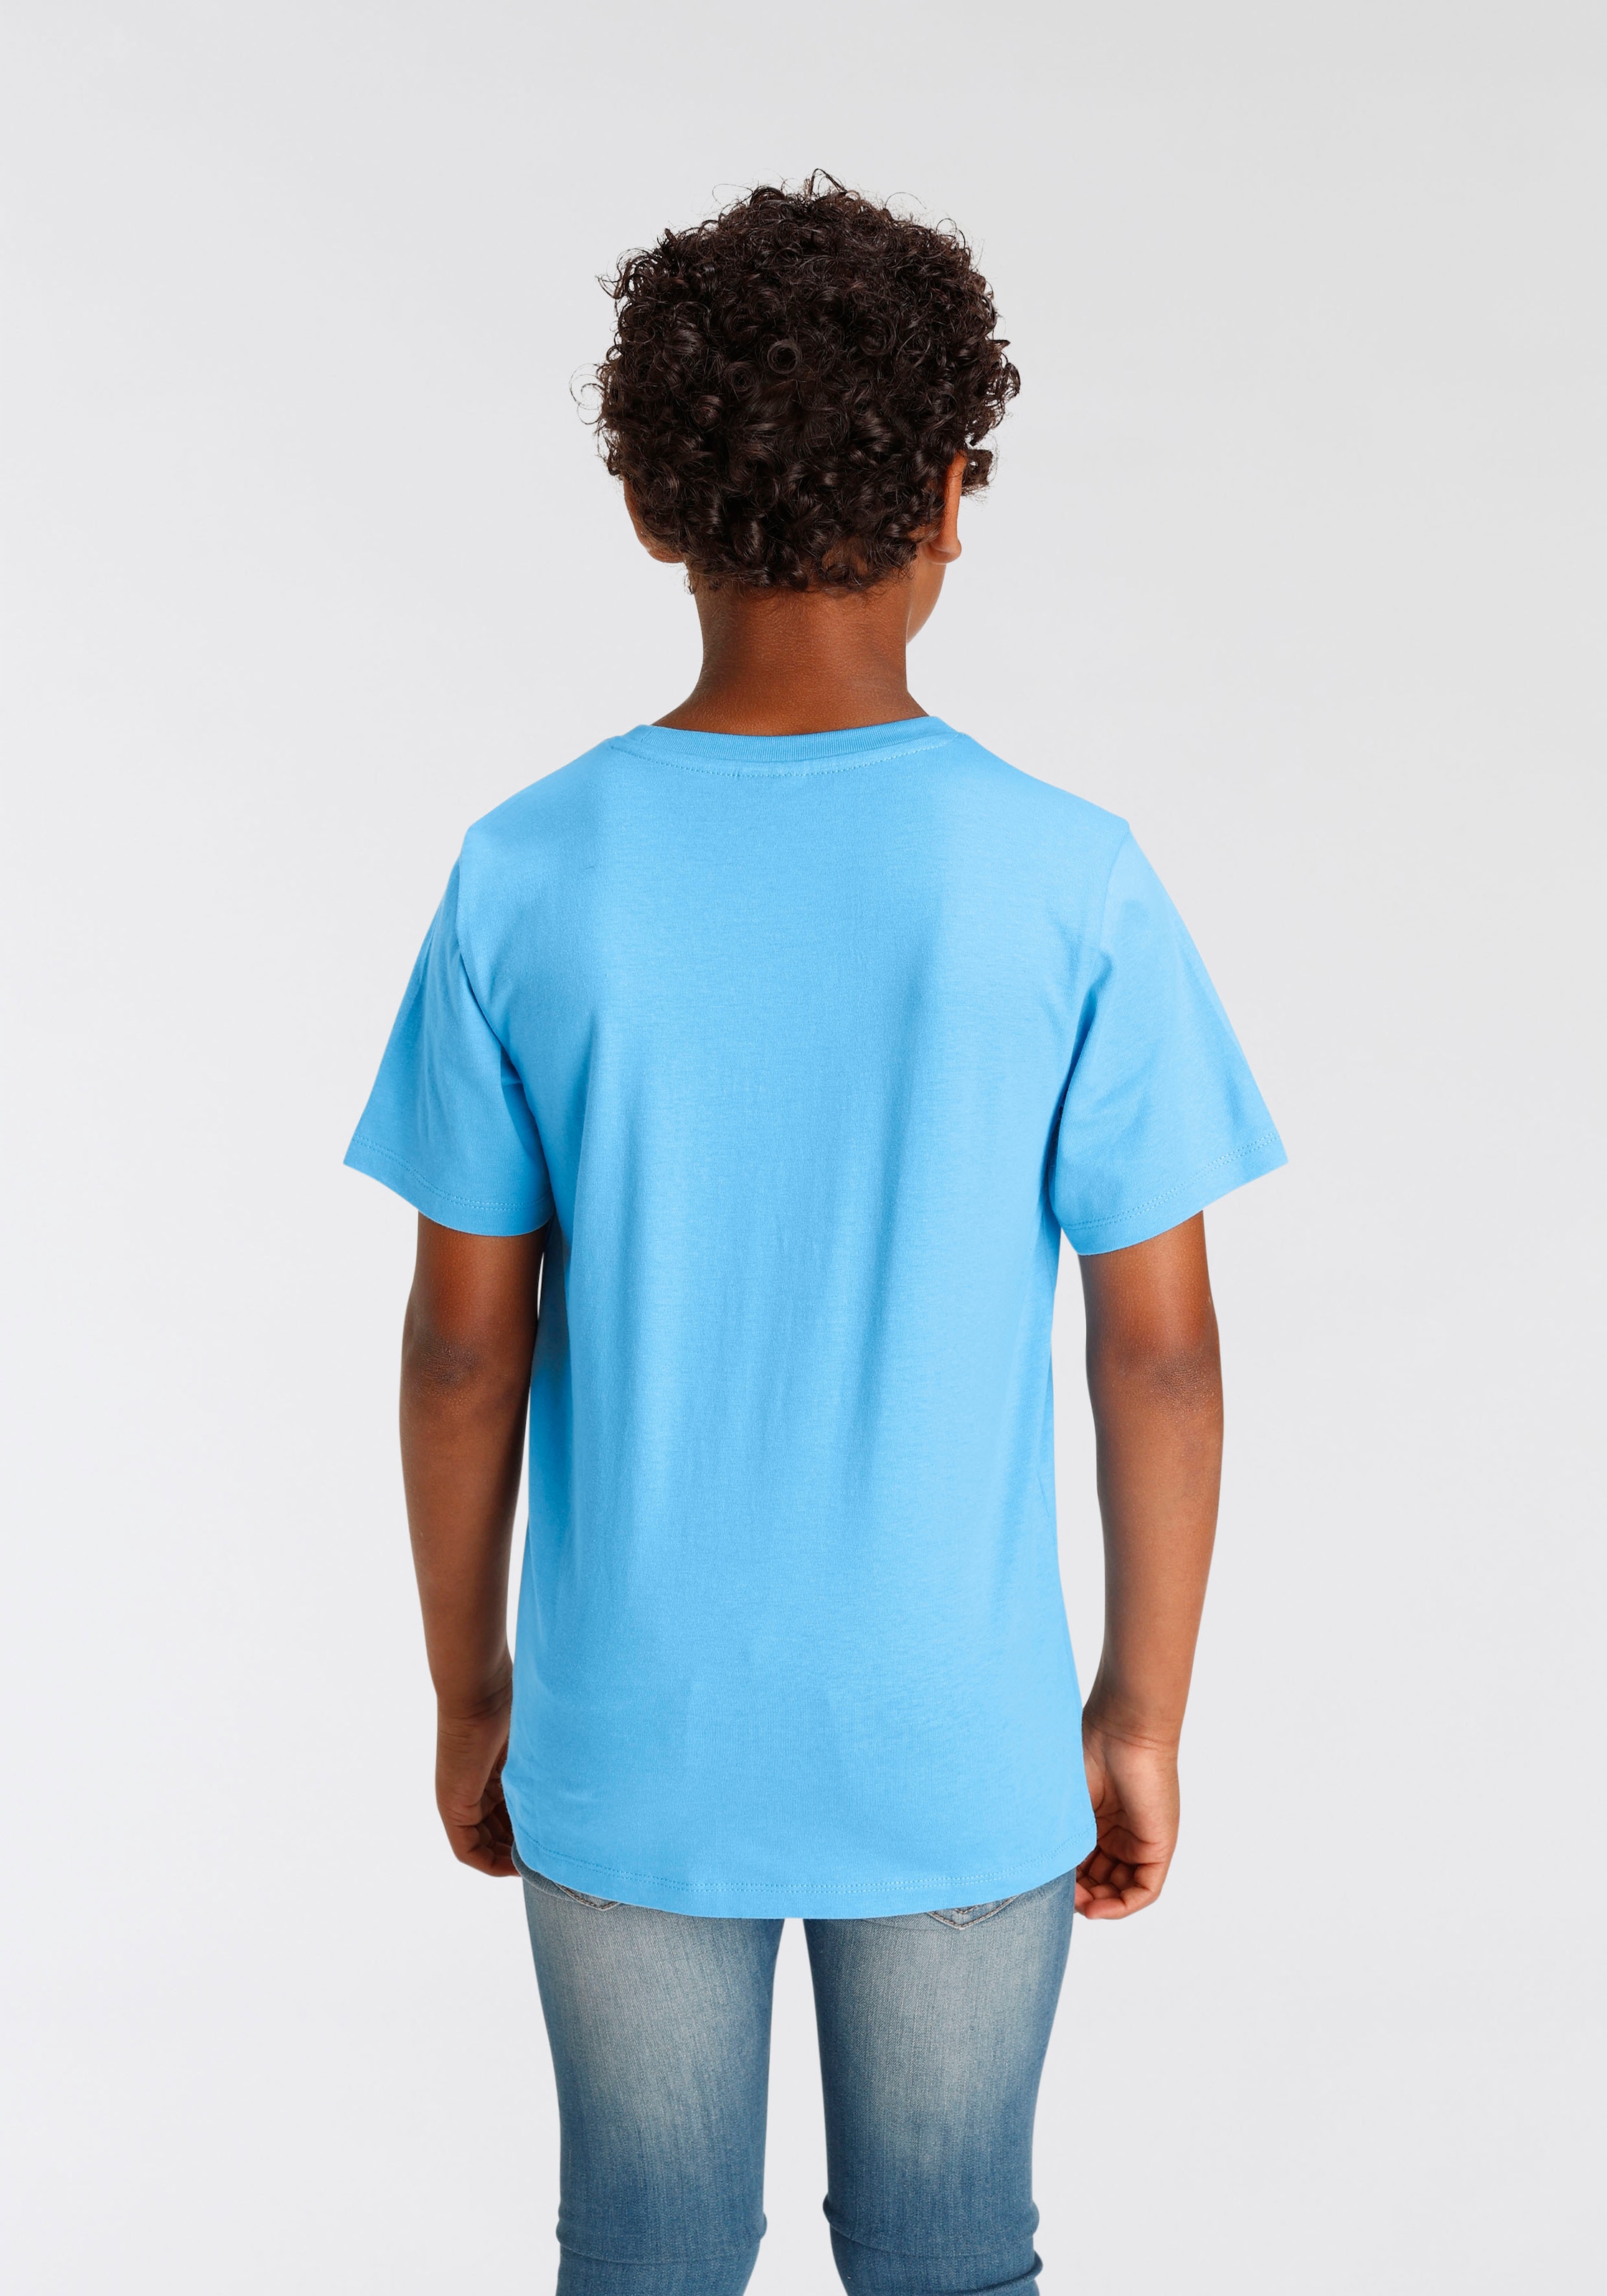 KIDSWORLD T-Shirt versandkostenfrei GAMING«, auf Folienprint »EPIC